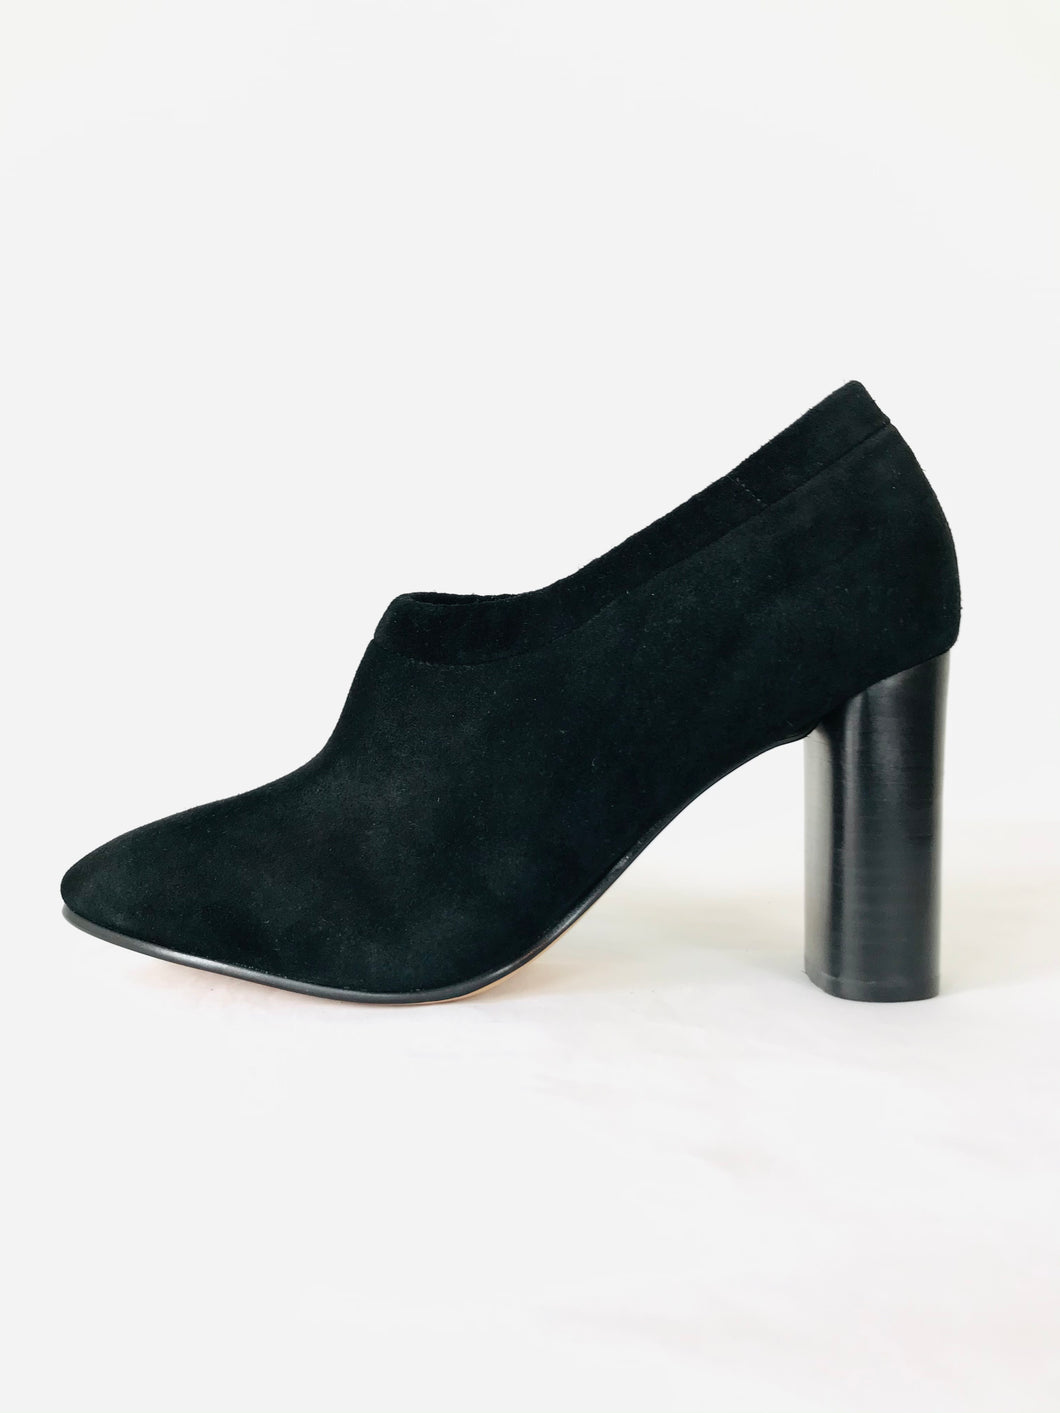 Clarks Narrative Women’s Block Heels Zip Court Shoes | UK6.5 | Black